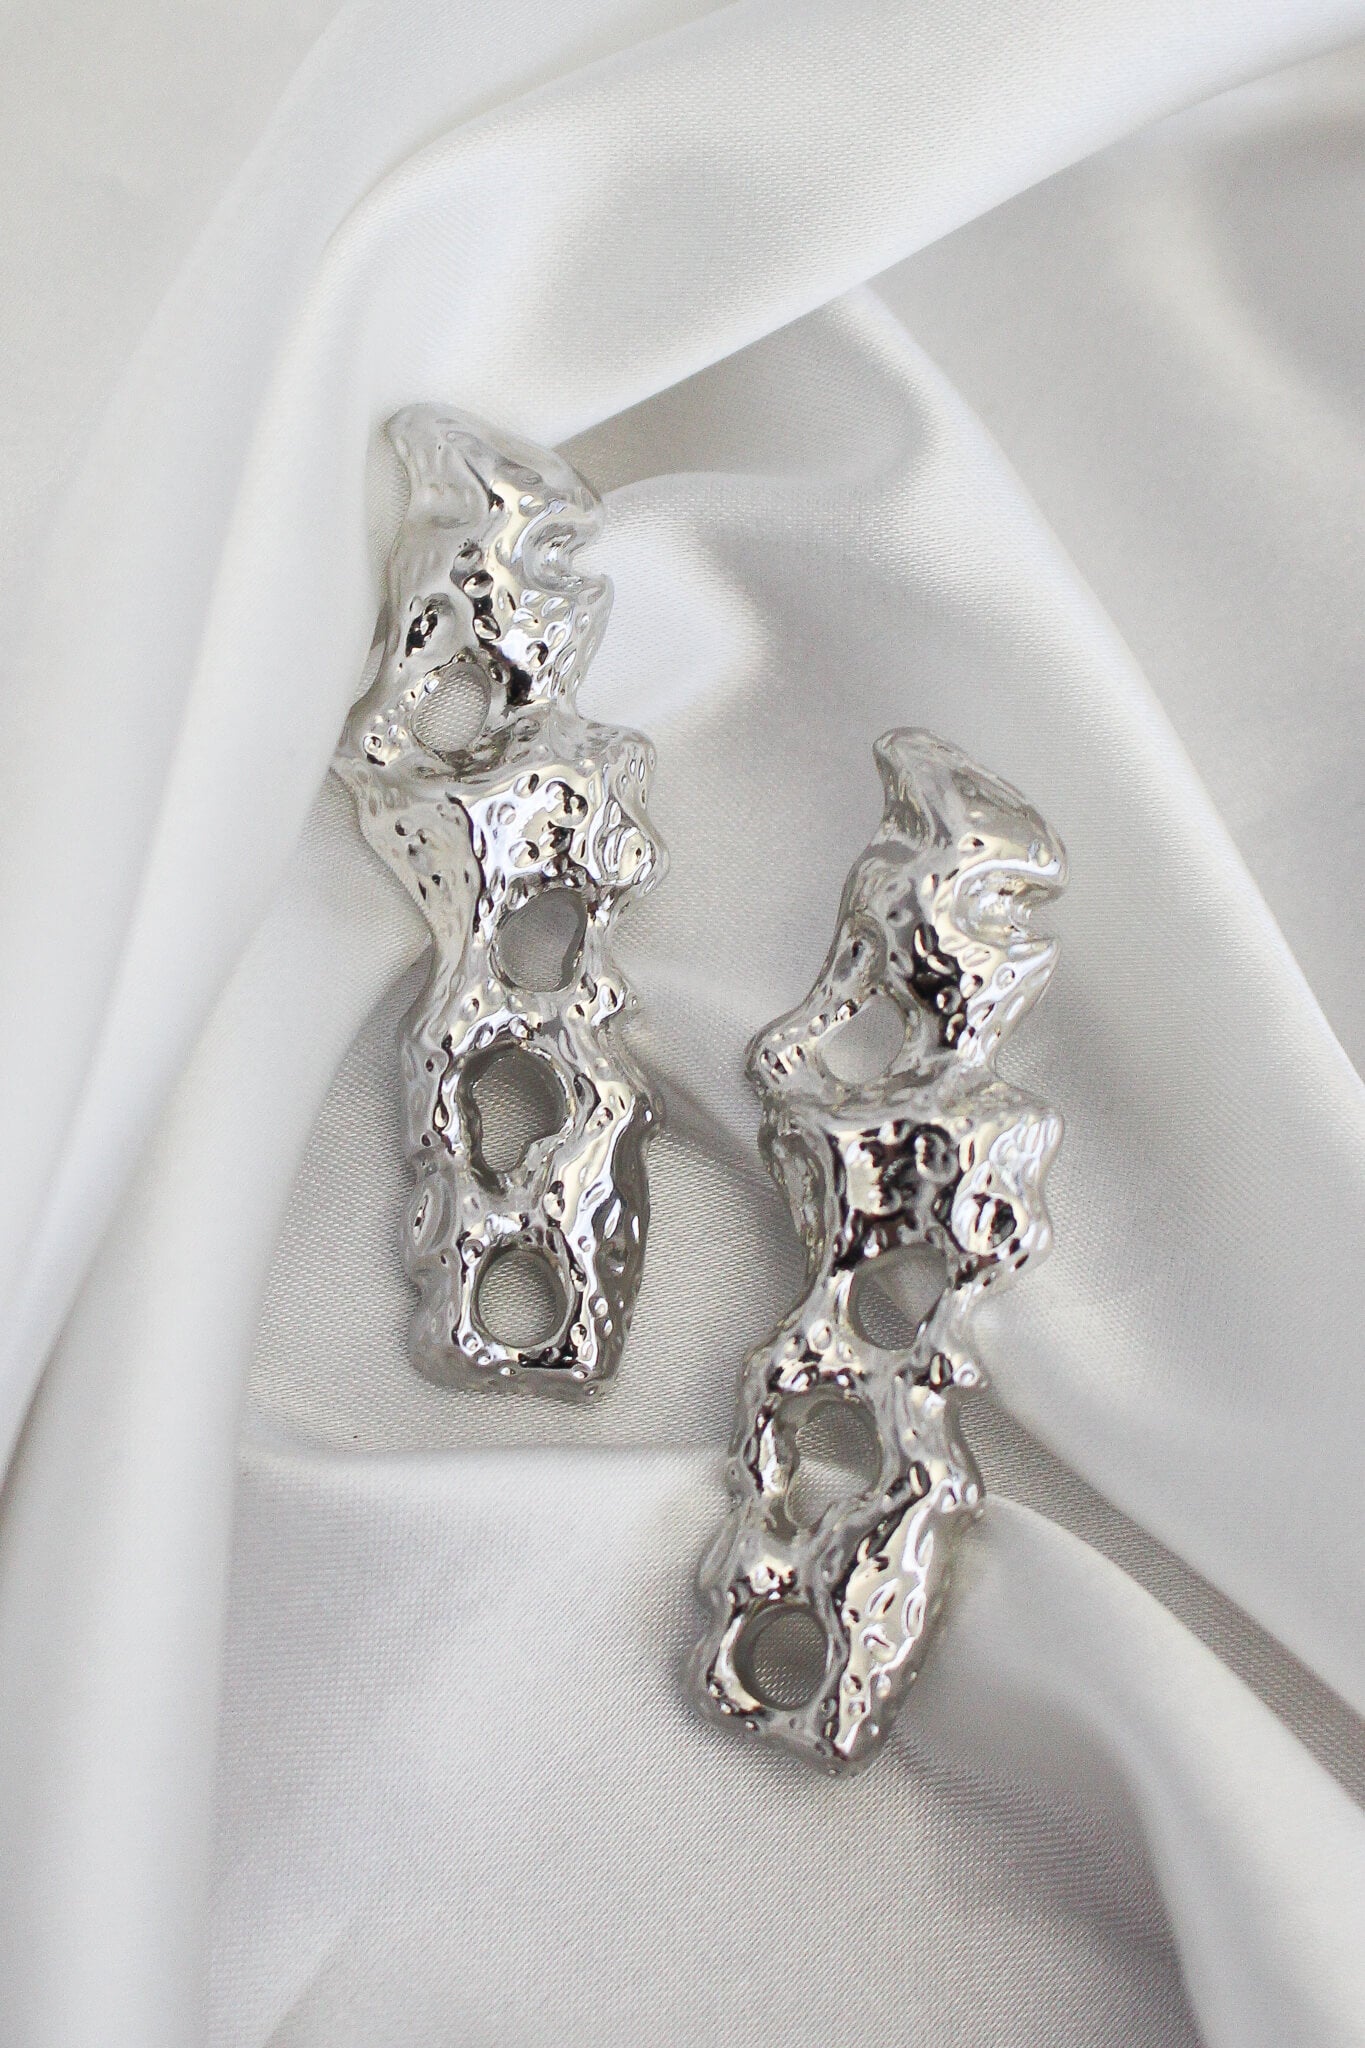 Silver odd shaped stud earrings